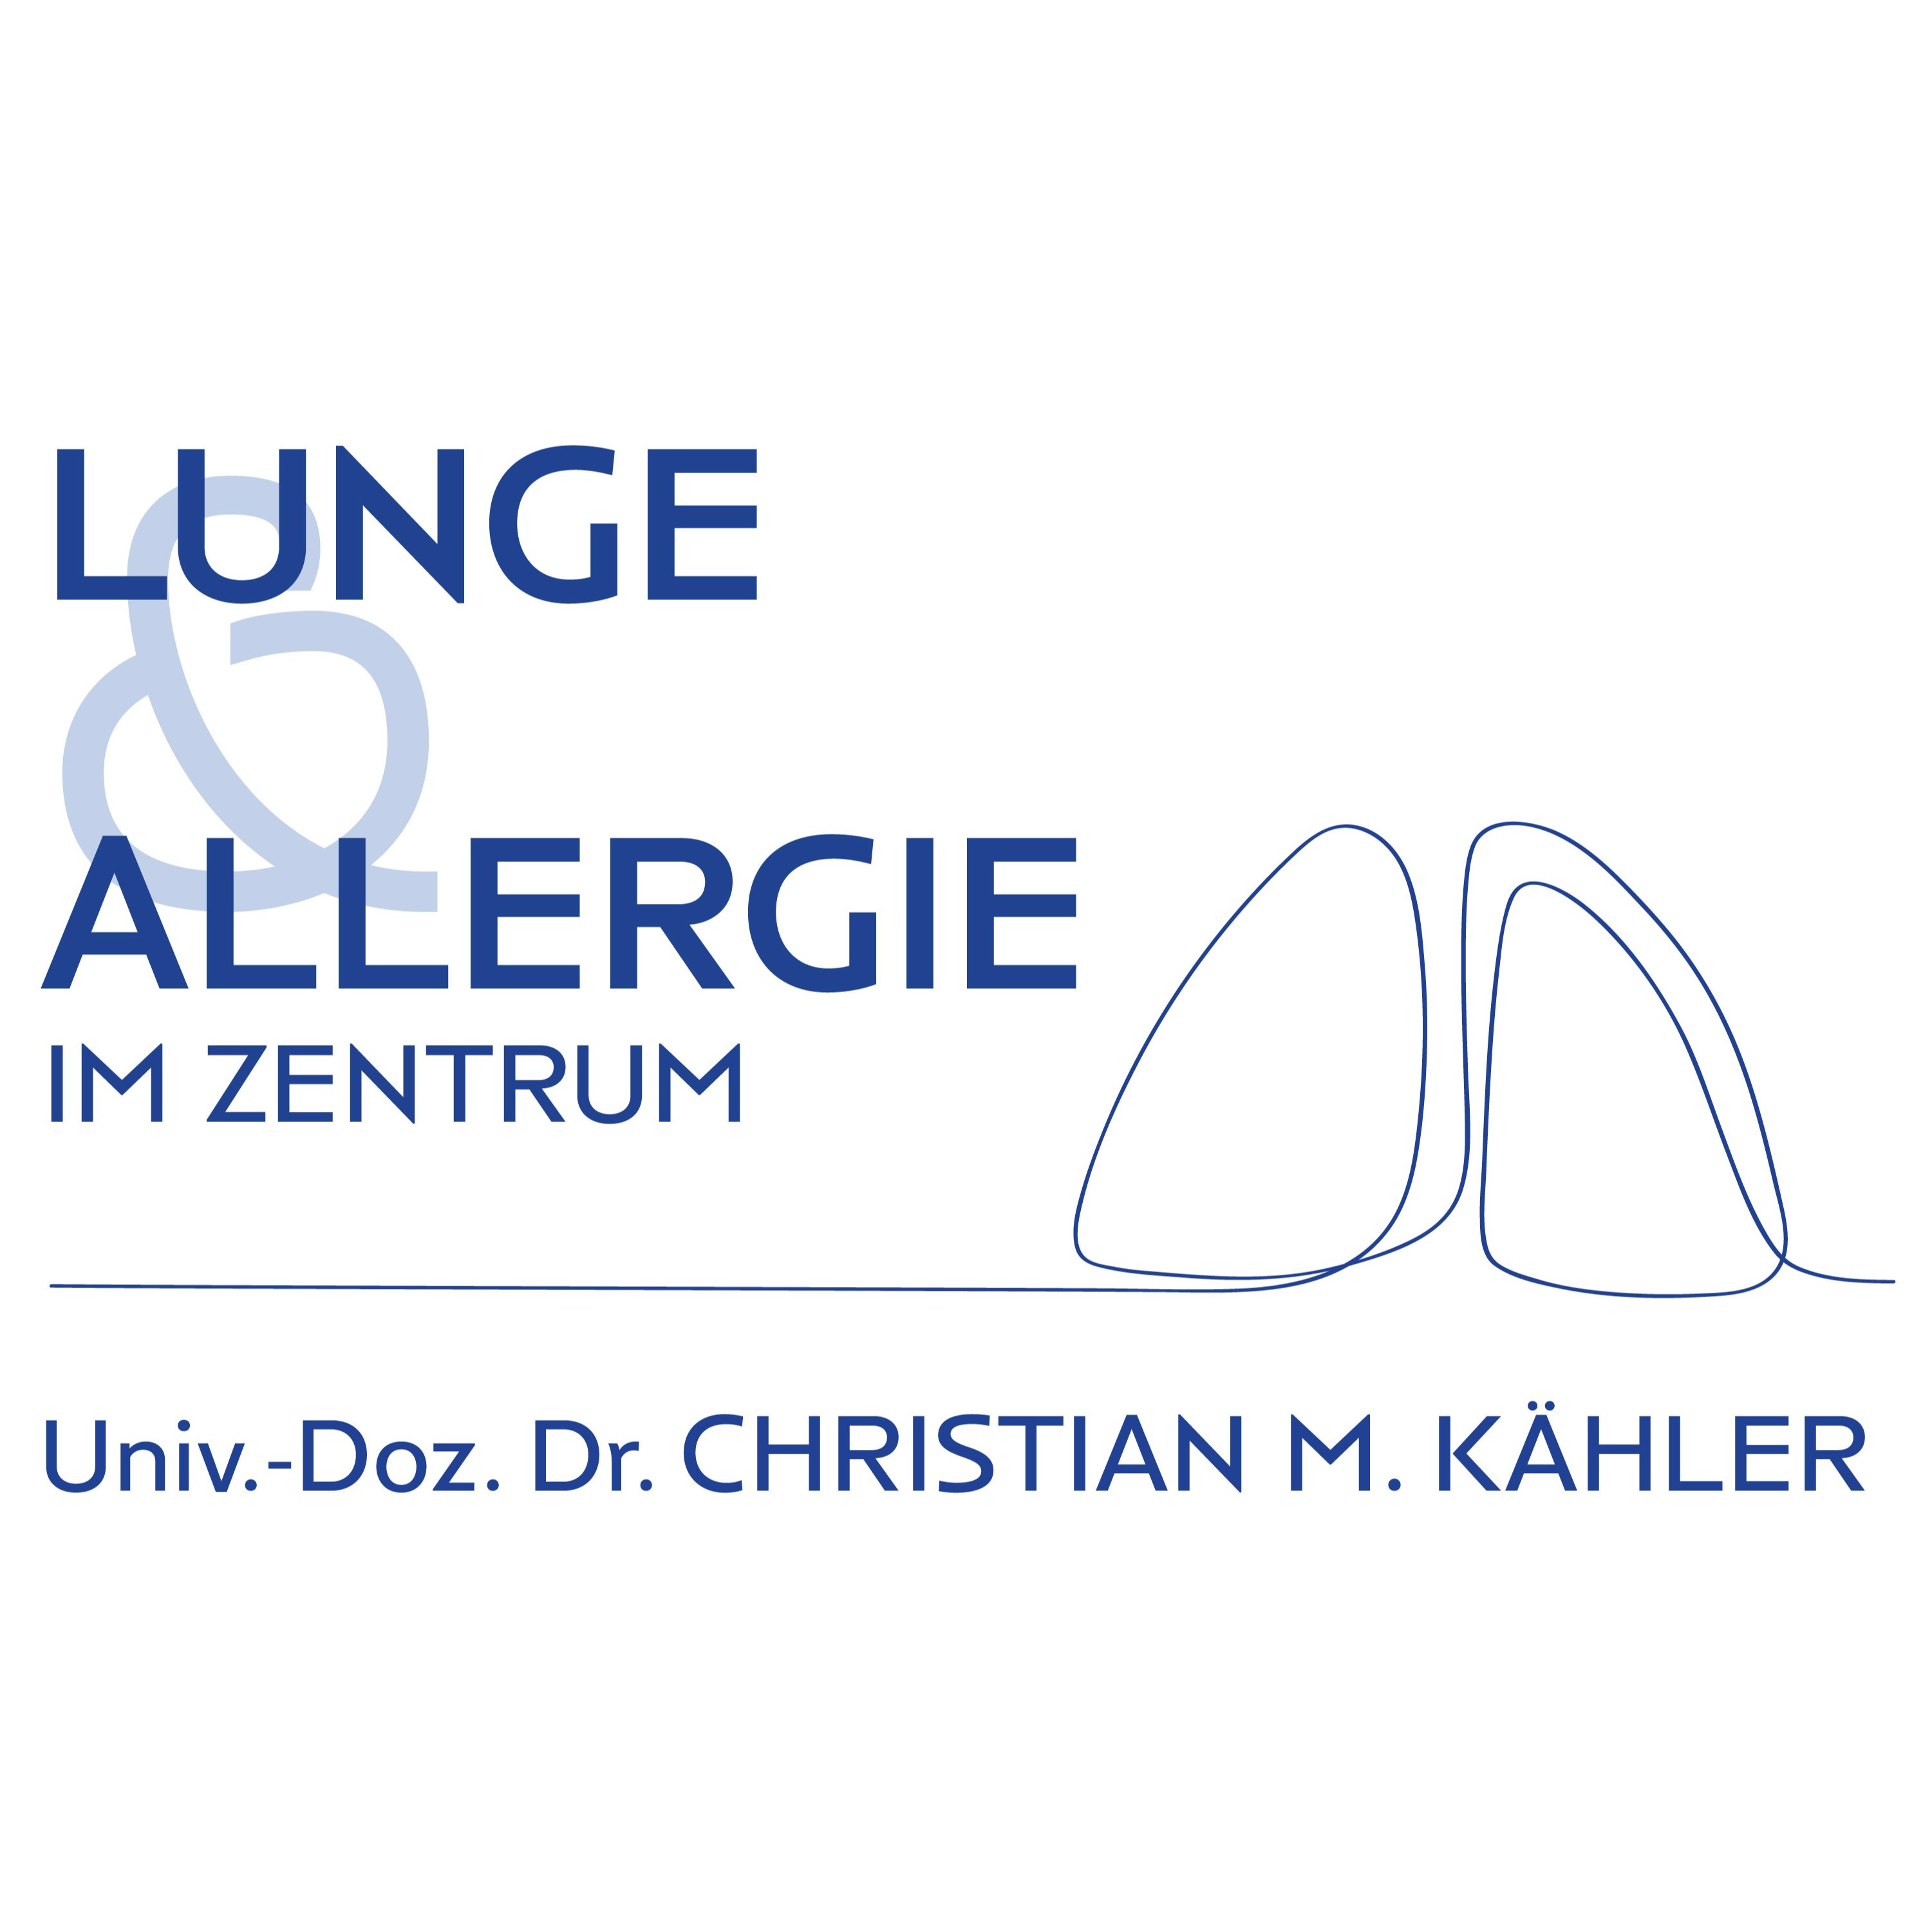 Lunge & Allergie Zentrum